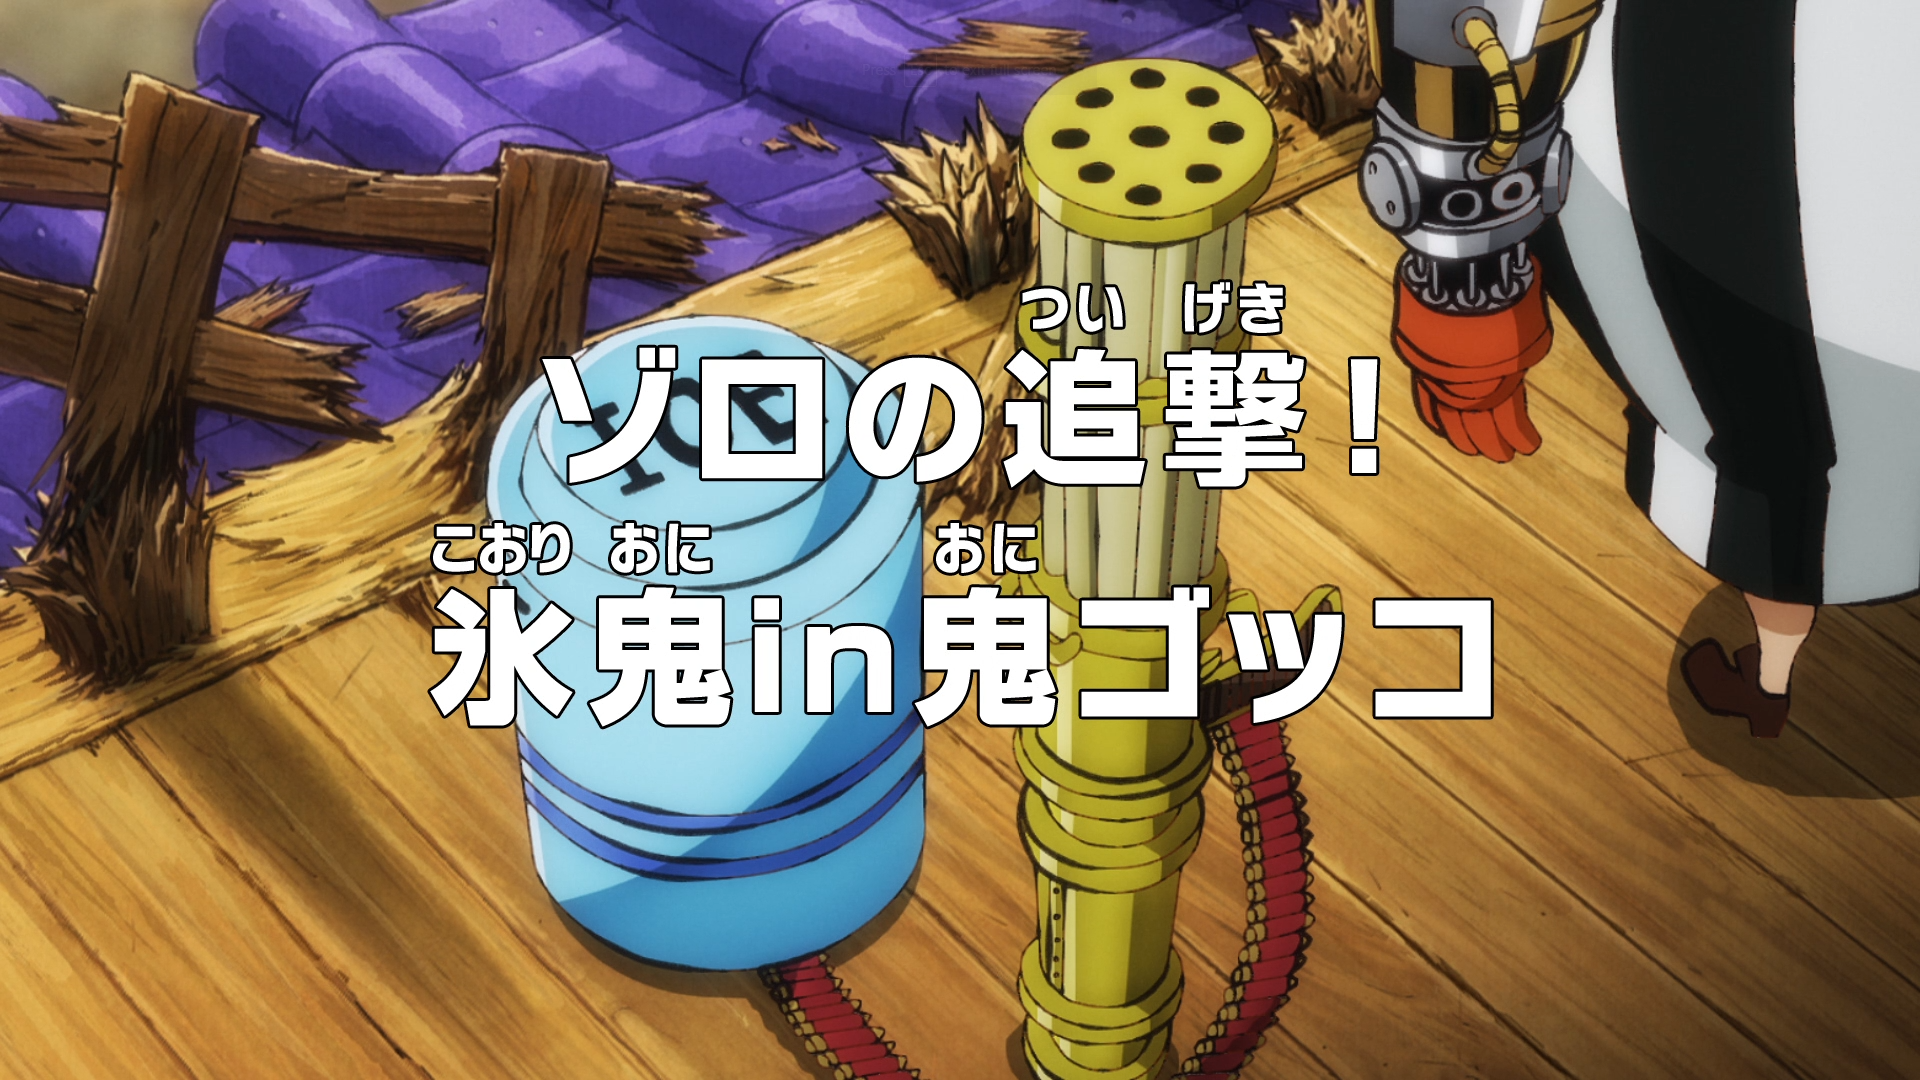 Episode 1007 One Piece Wiki Fandom